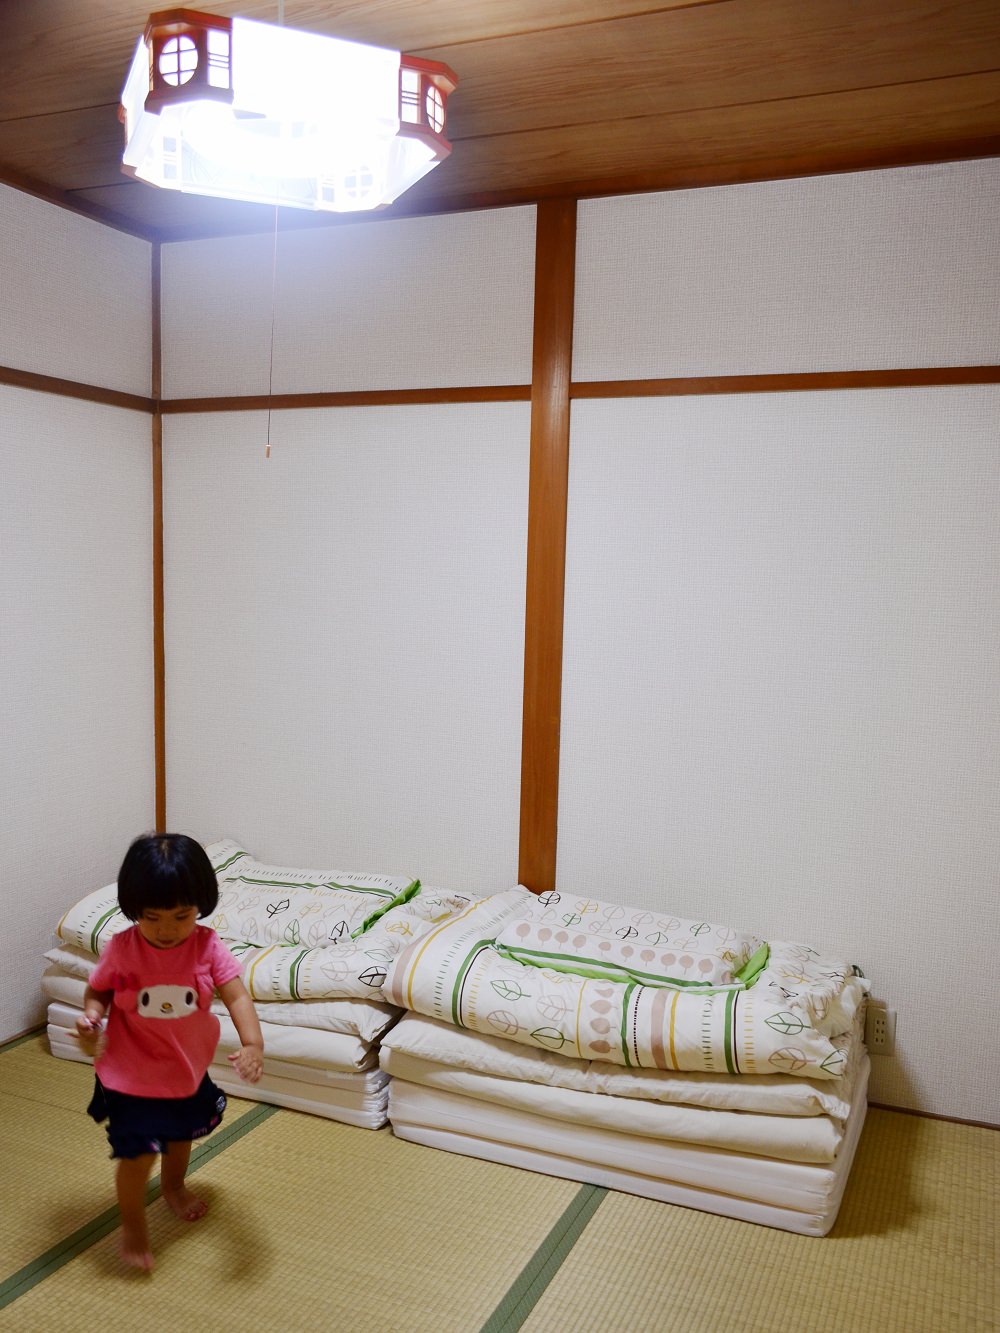 日本大阪住宿推薦_多明哥之家-天下茶屋│離熱鬧地區不遠，可以體會日本當地民俗風情的獨棟民宿。